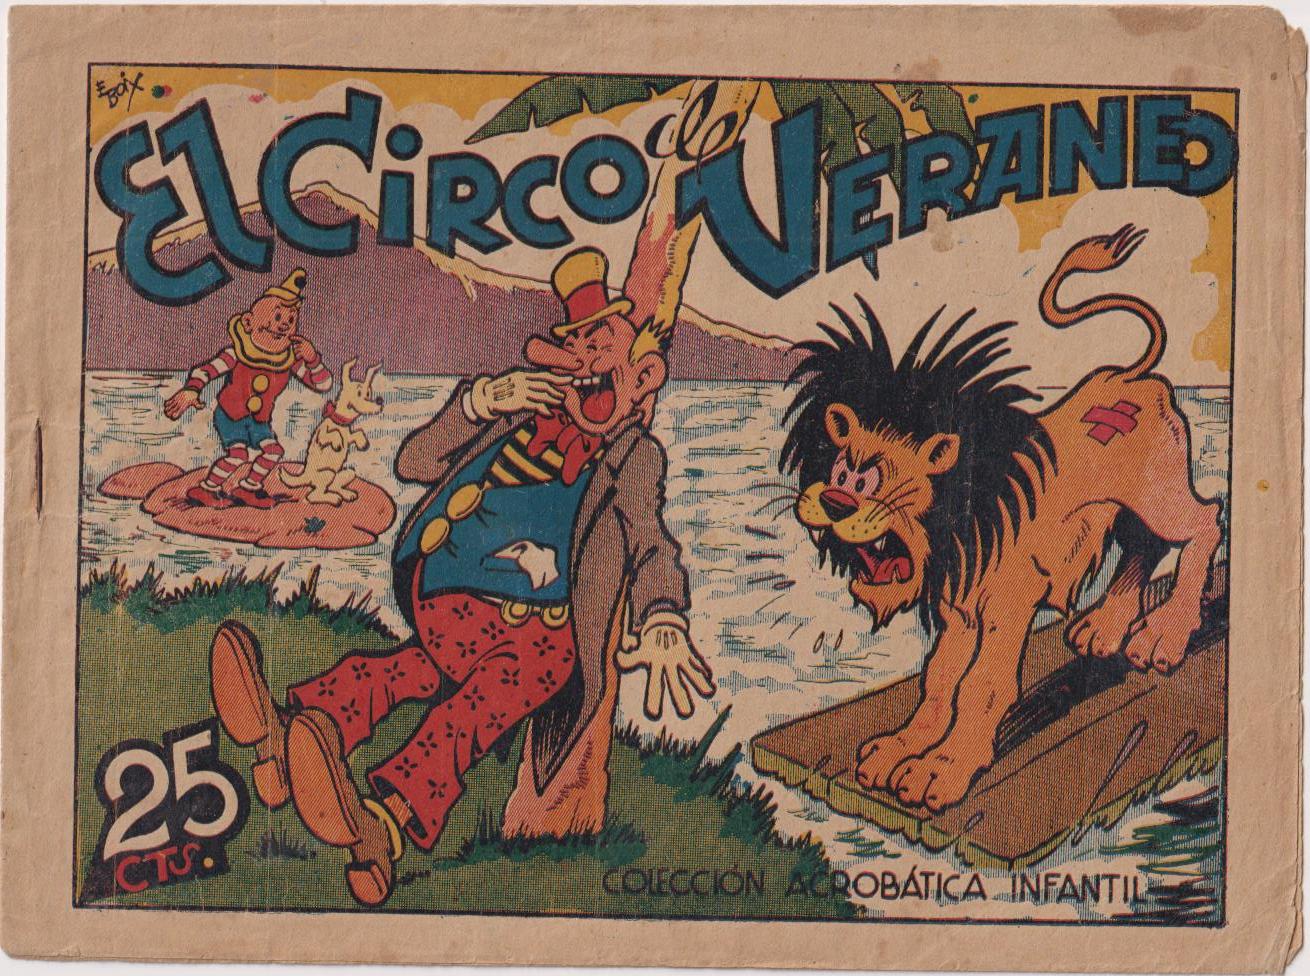 Pirulo y Tontolote. El Circo de Veraneo. Acrobática Infantil. marco 1942